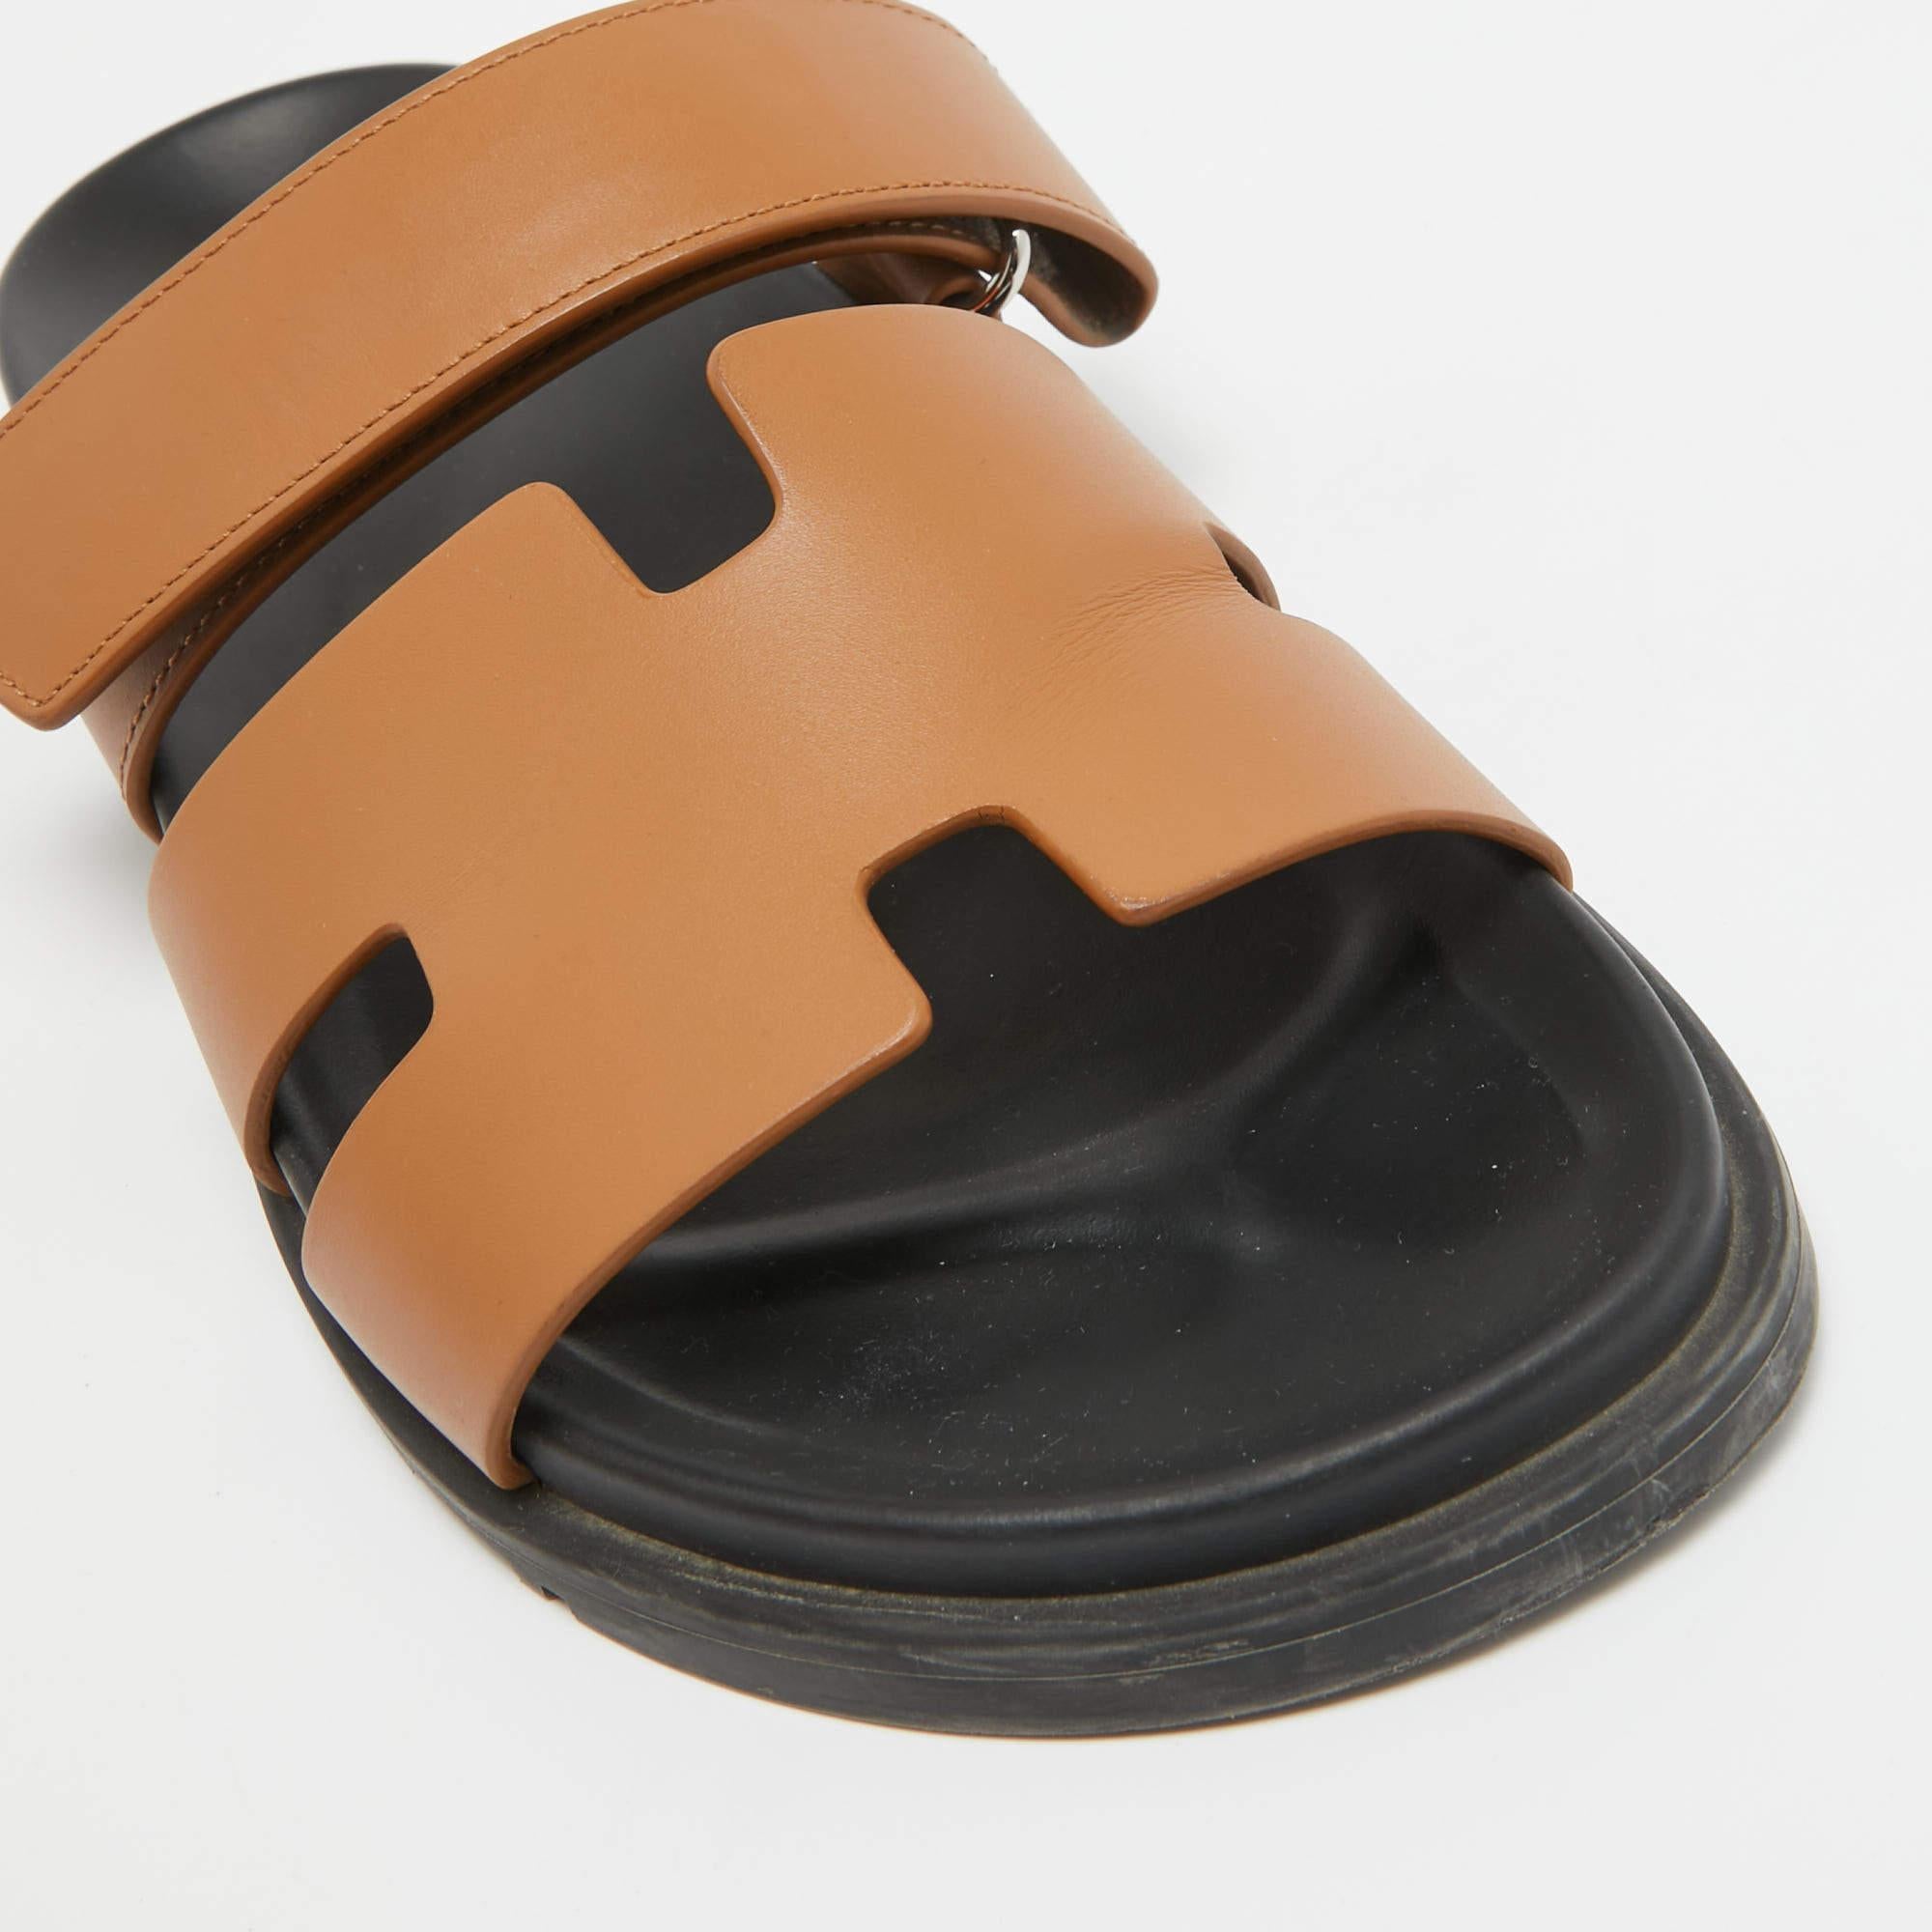 Ces sandales encadreront vos pieds de manière élégante. Fabriquées à partir de matériaux de qualité, elles présentent un design élégant et des semelles intérieures confortables.


Comprend : Sac à poussière d'origine, boîte d'origine